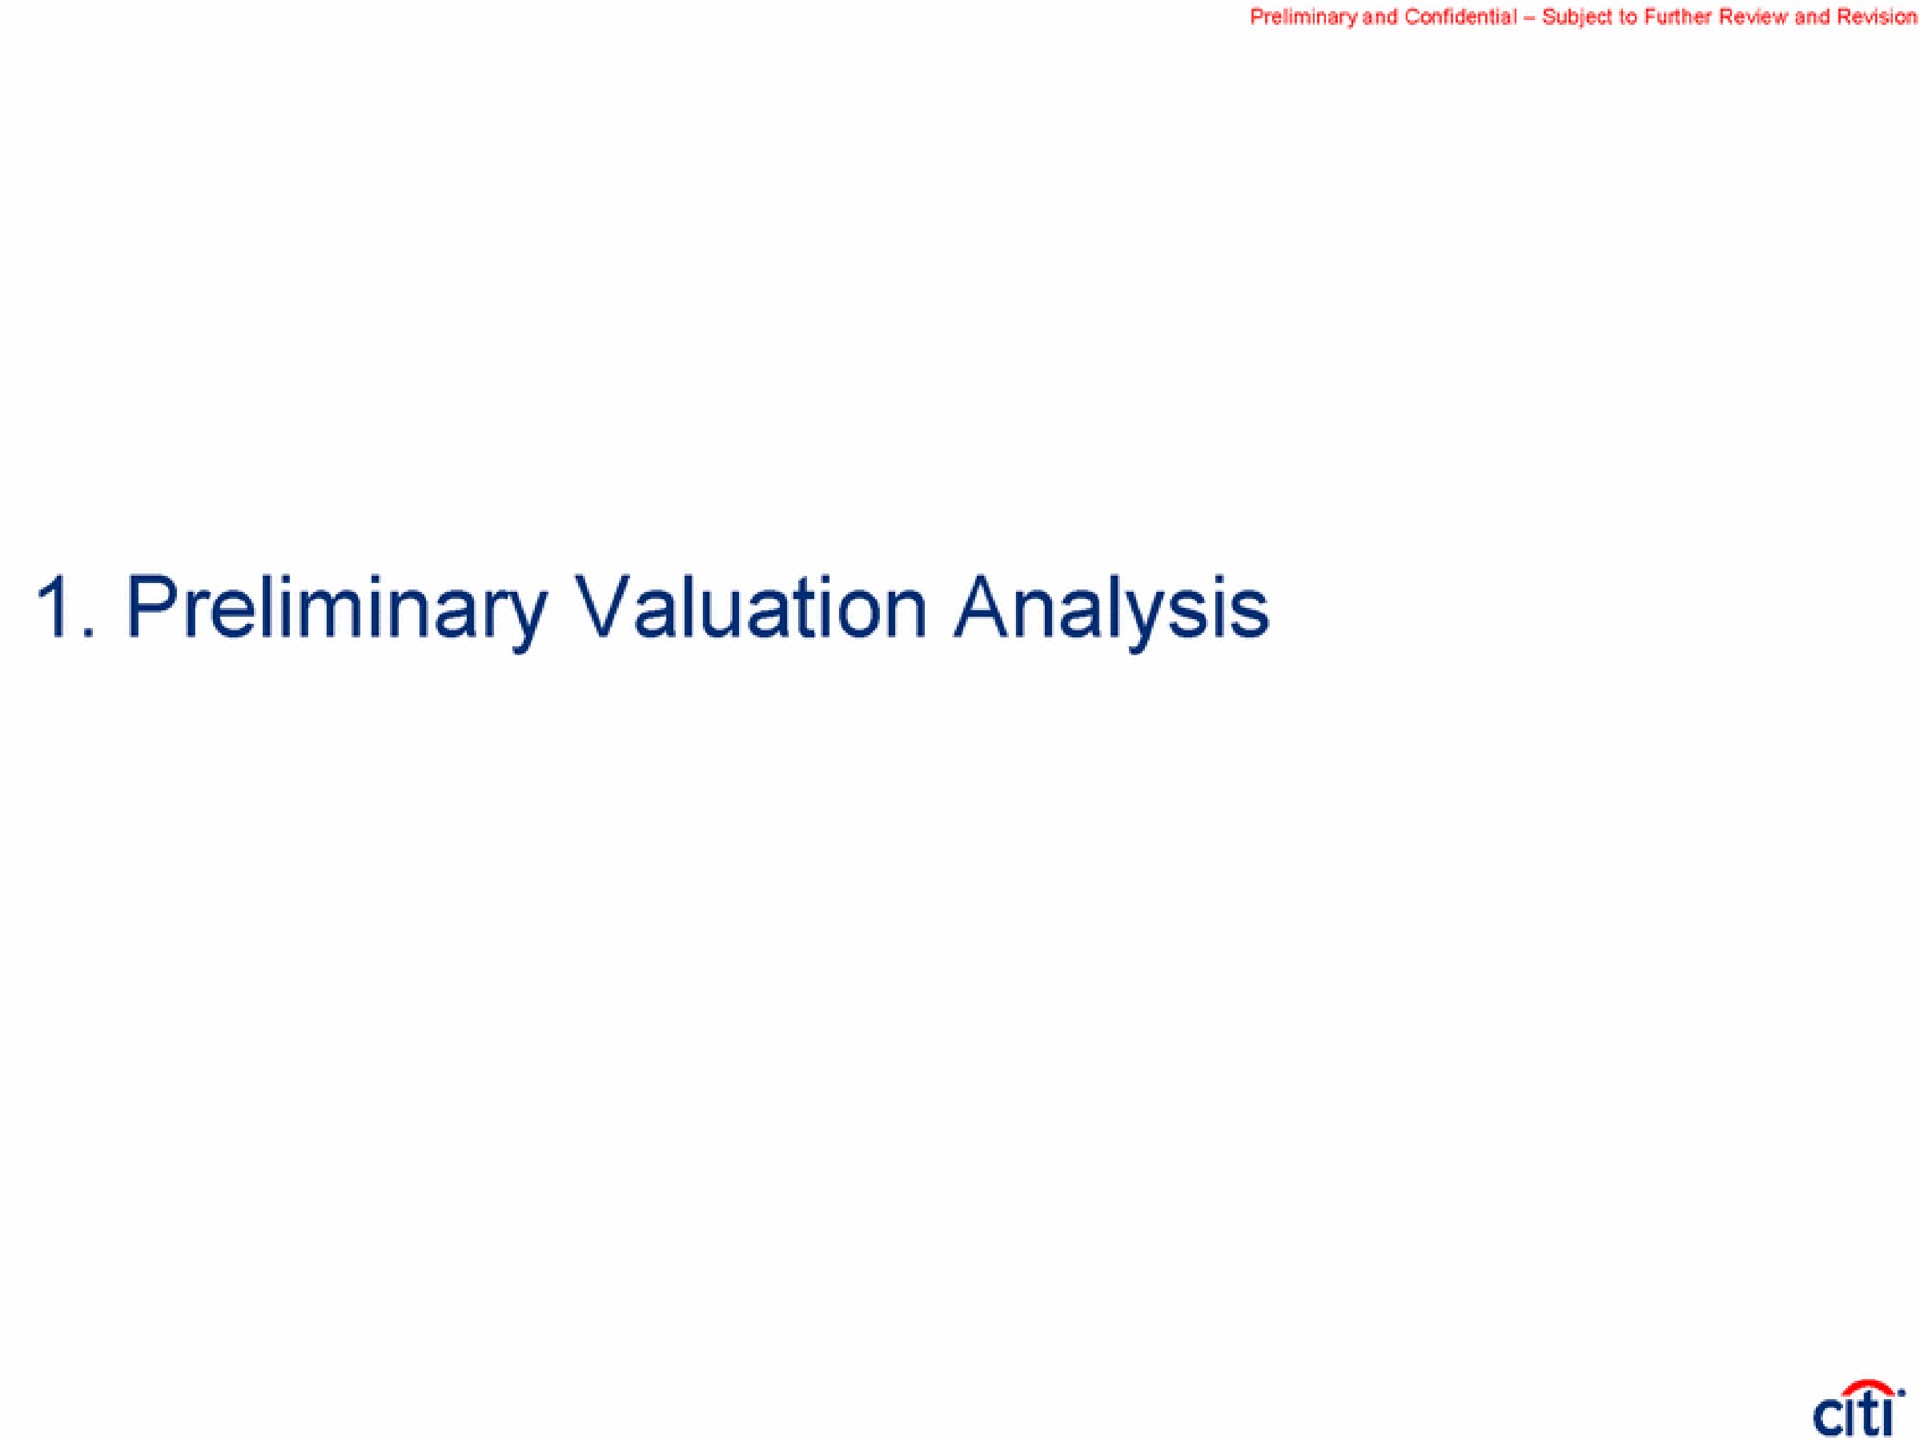 preliminary valuation analysis | Citi